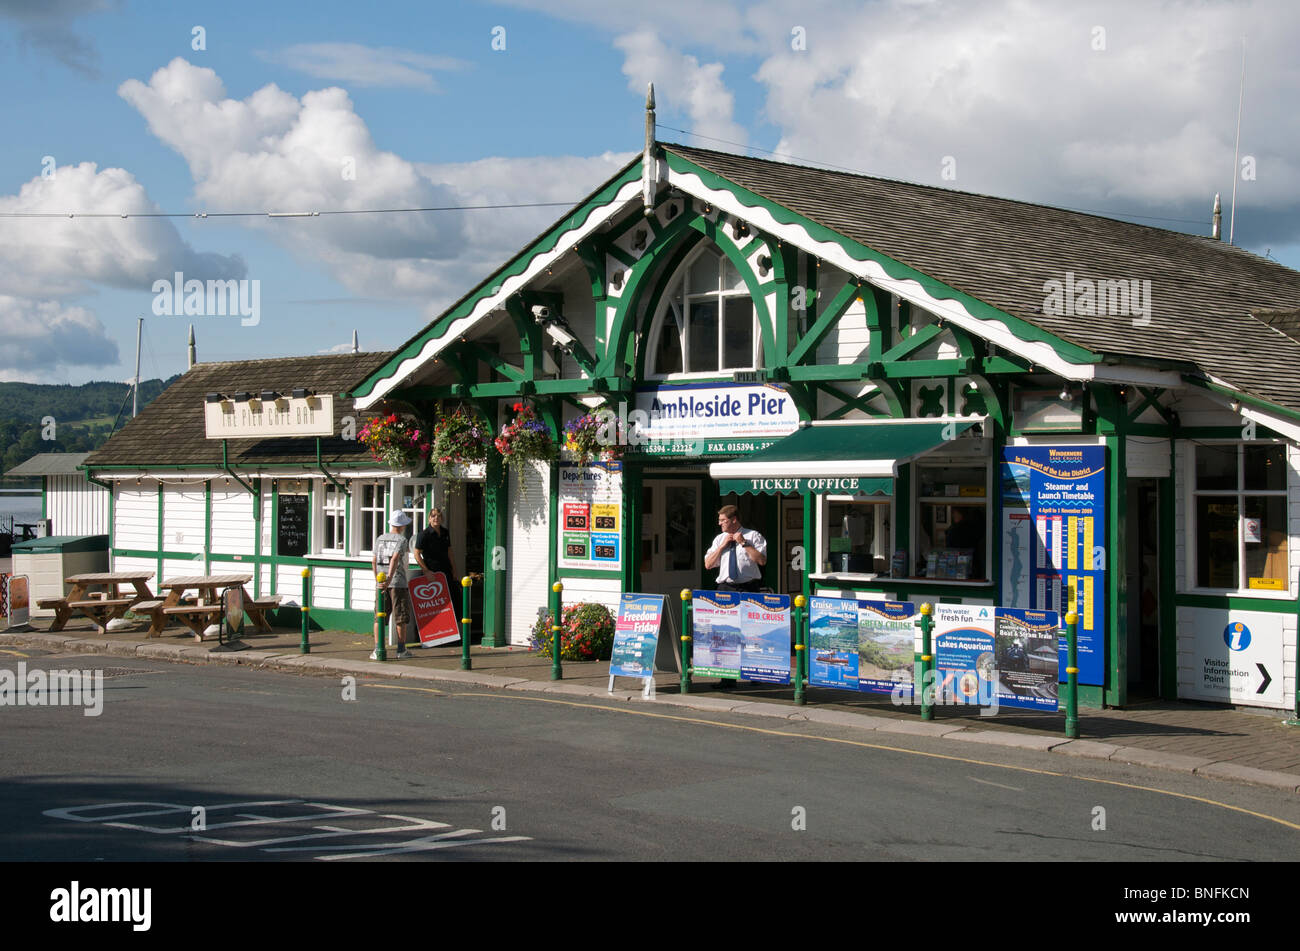 La biglietteria Ambleside Pier Lake District Cumbria Inghilterra England Foto Stock